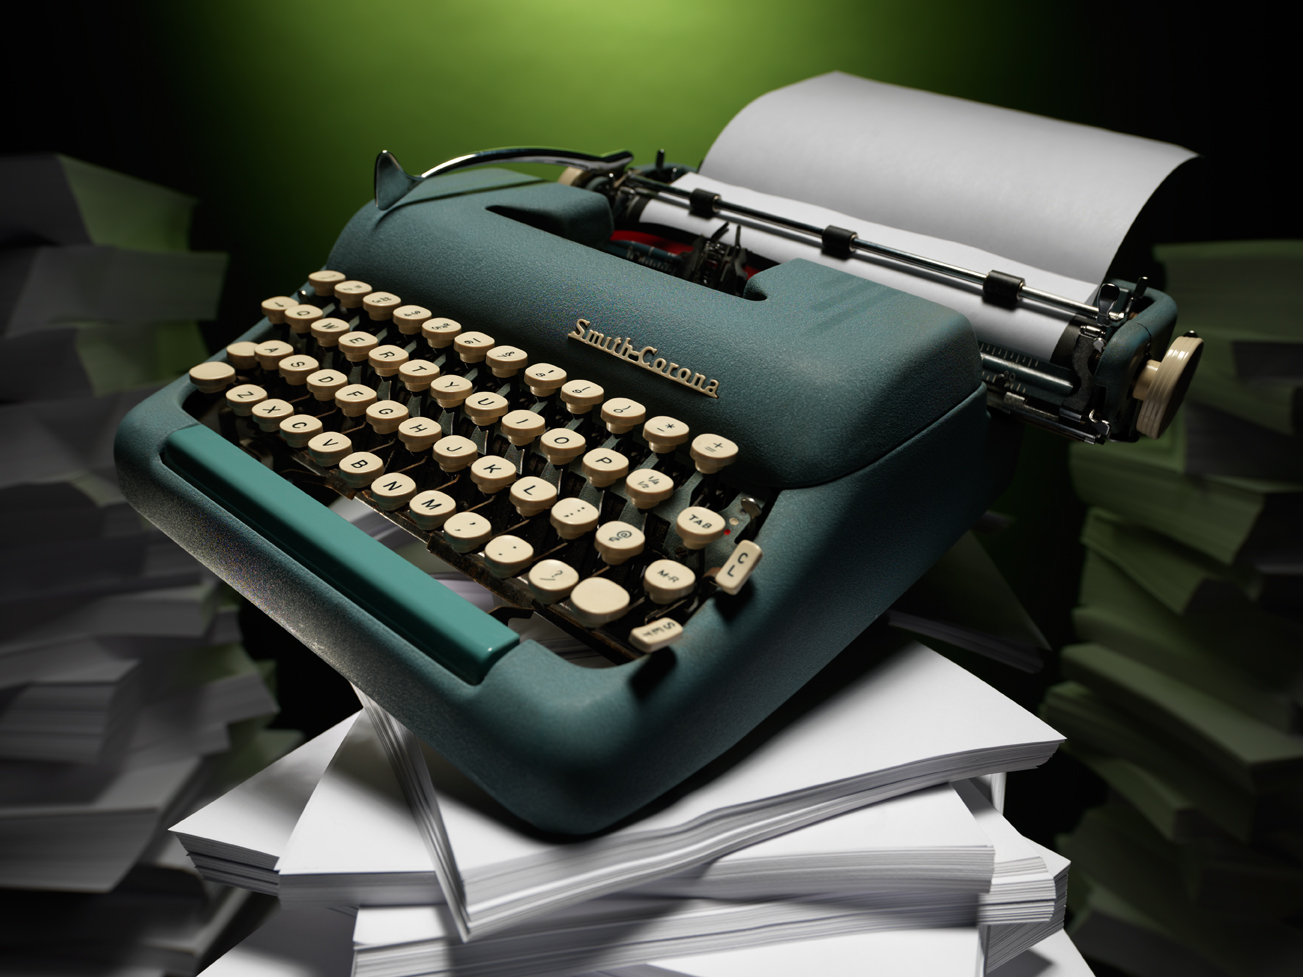 Typewriter test  — Studio 3, Inc.